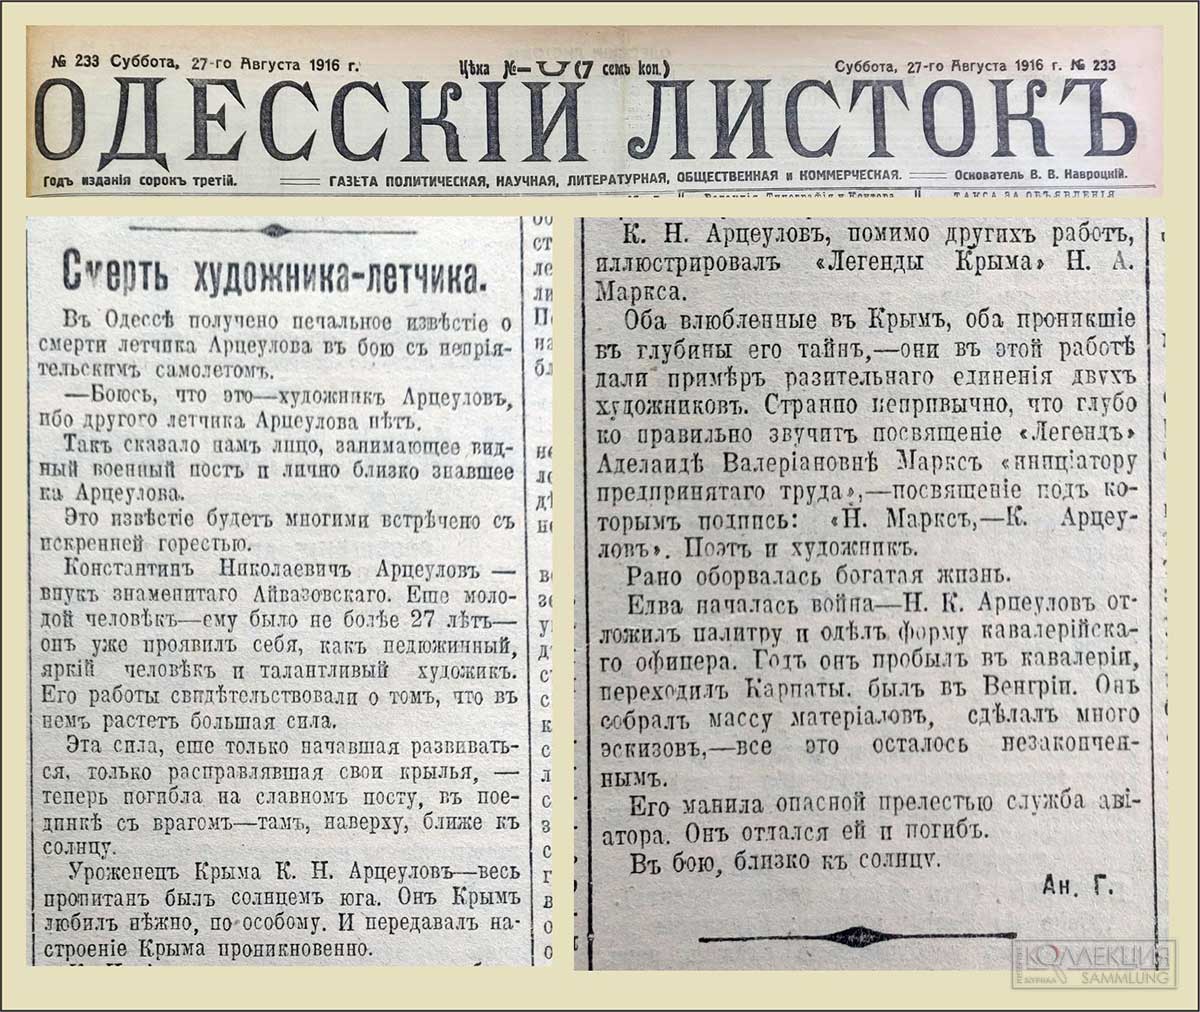 Смерть художника-лётчика. Газета «Одесский листок» №233 за 27 августа 1916 г. На неё ссылается Марк Галлай в своей книге. РГБ